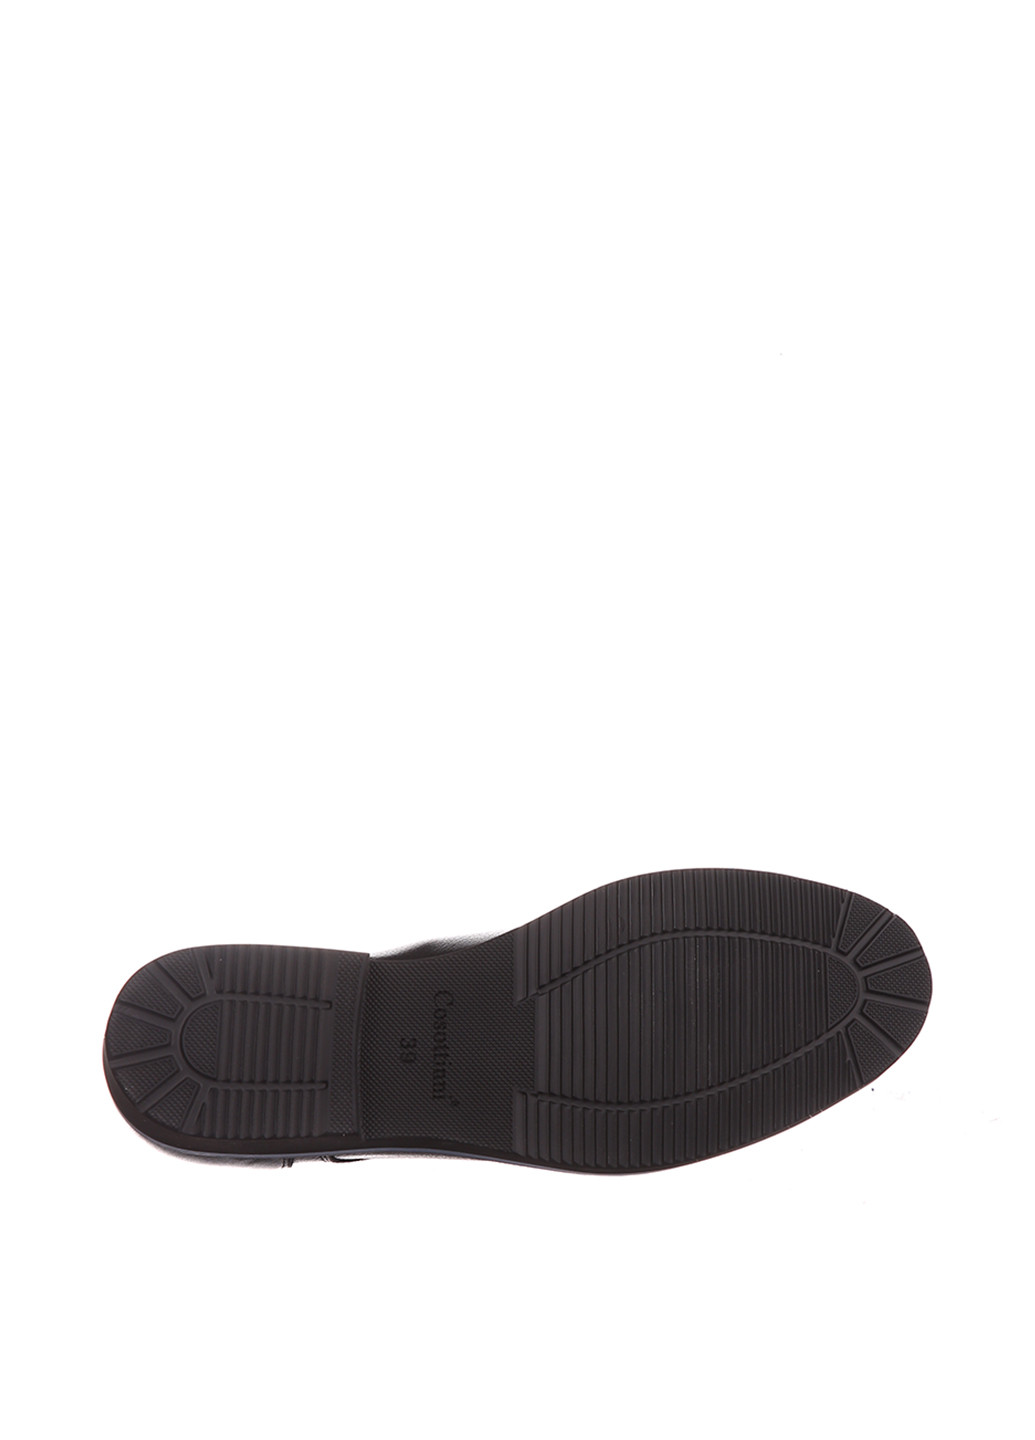 Черные классические туфли Cosottinni на шнурках